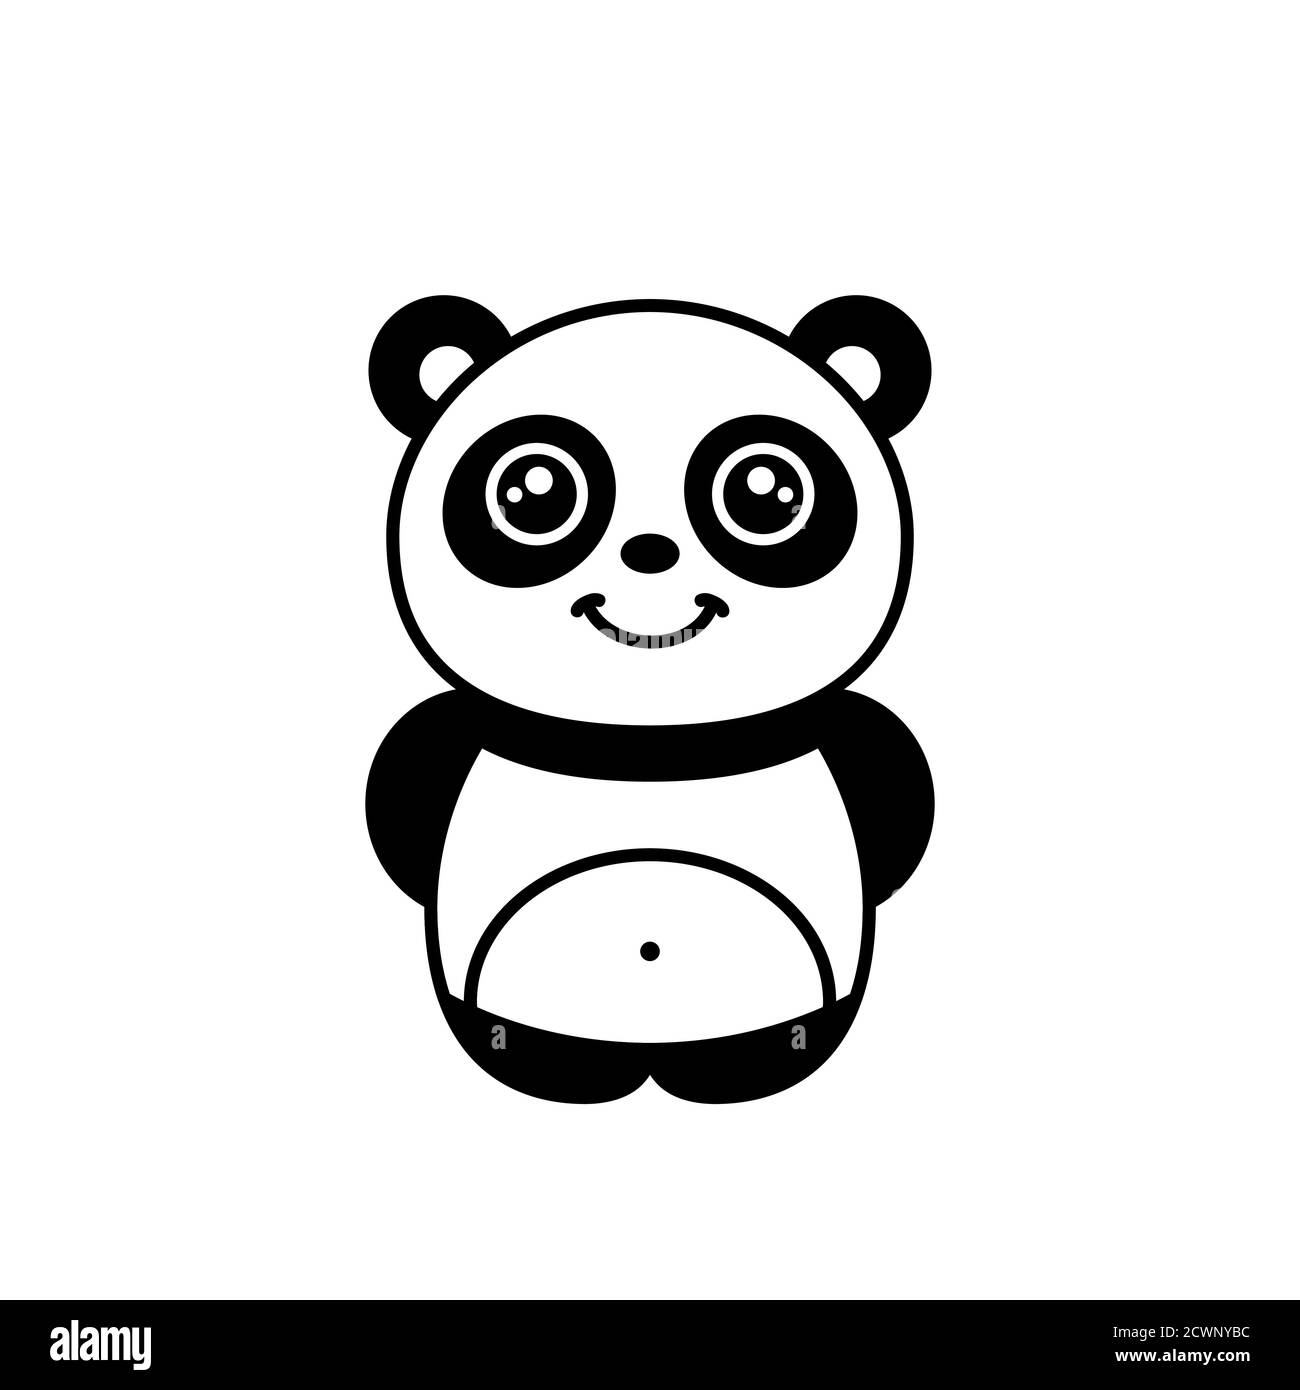 Un panda muy bonito sonriendo. Oso panda bebé kawaii. Niños dibujando.  Divertido panda de dibujos animados de pie. Animales en peligro de extinción.  El vector panda gigante Imagen Vector de stock -